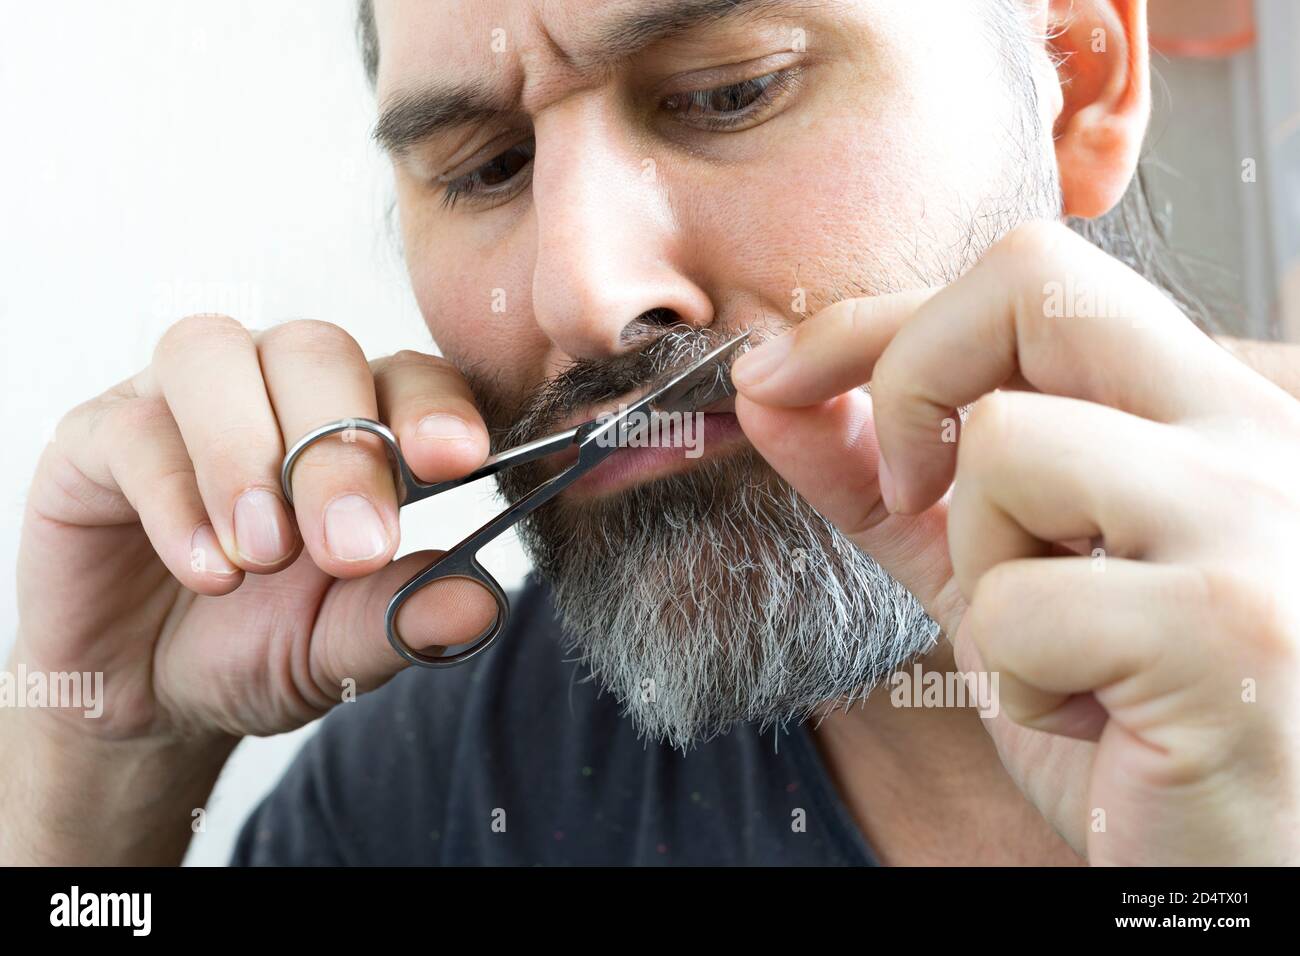 Un barbu coupe soigneusement sa moustache à l'aide d'une petite paire de ciseaux. Vue rapprochée. Banque D'Images